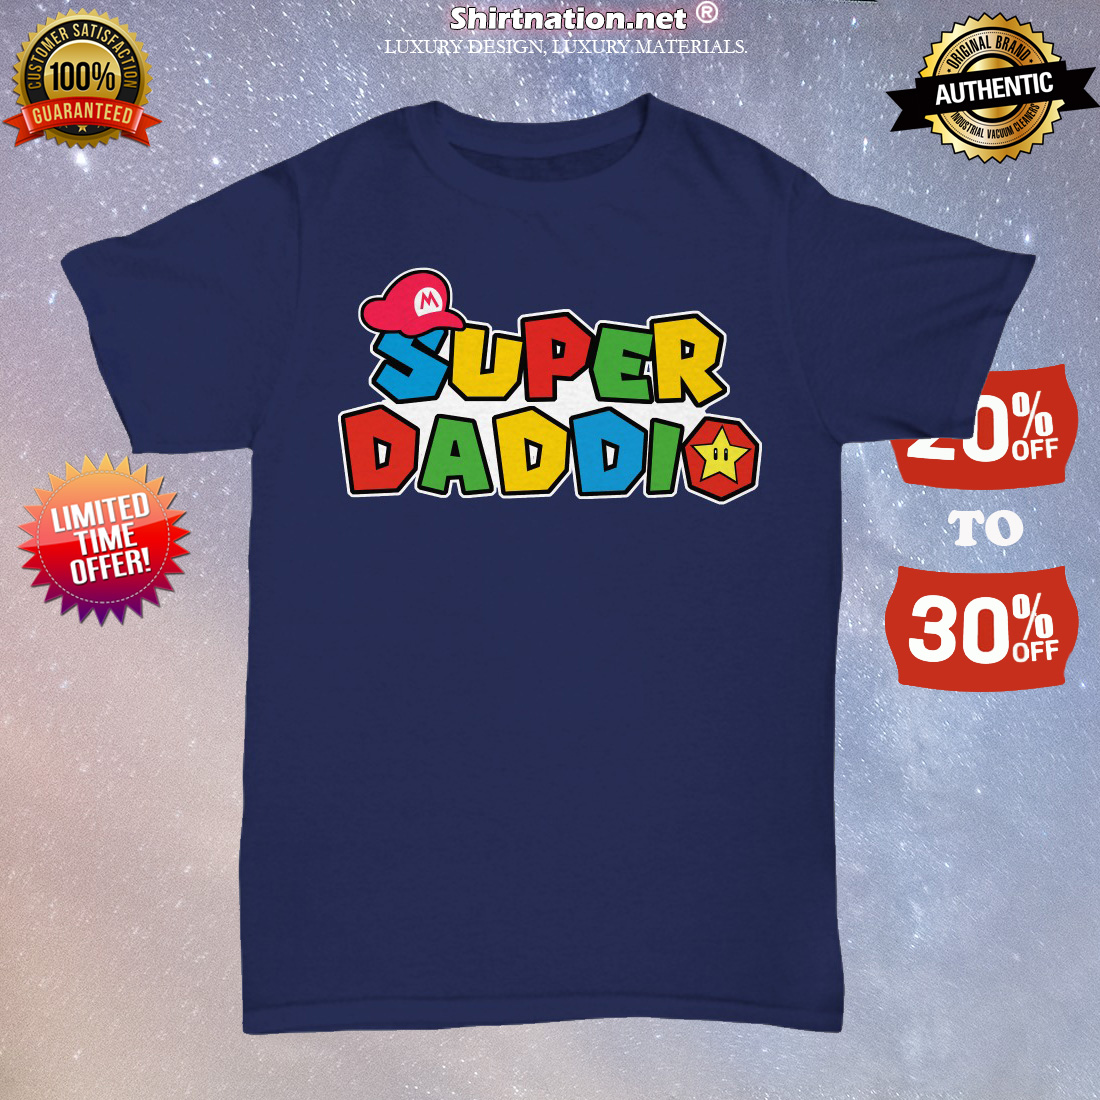 Super daddio unisex tee shirt